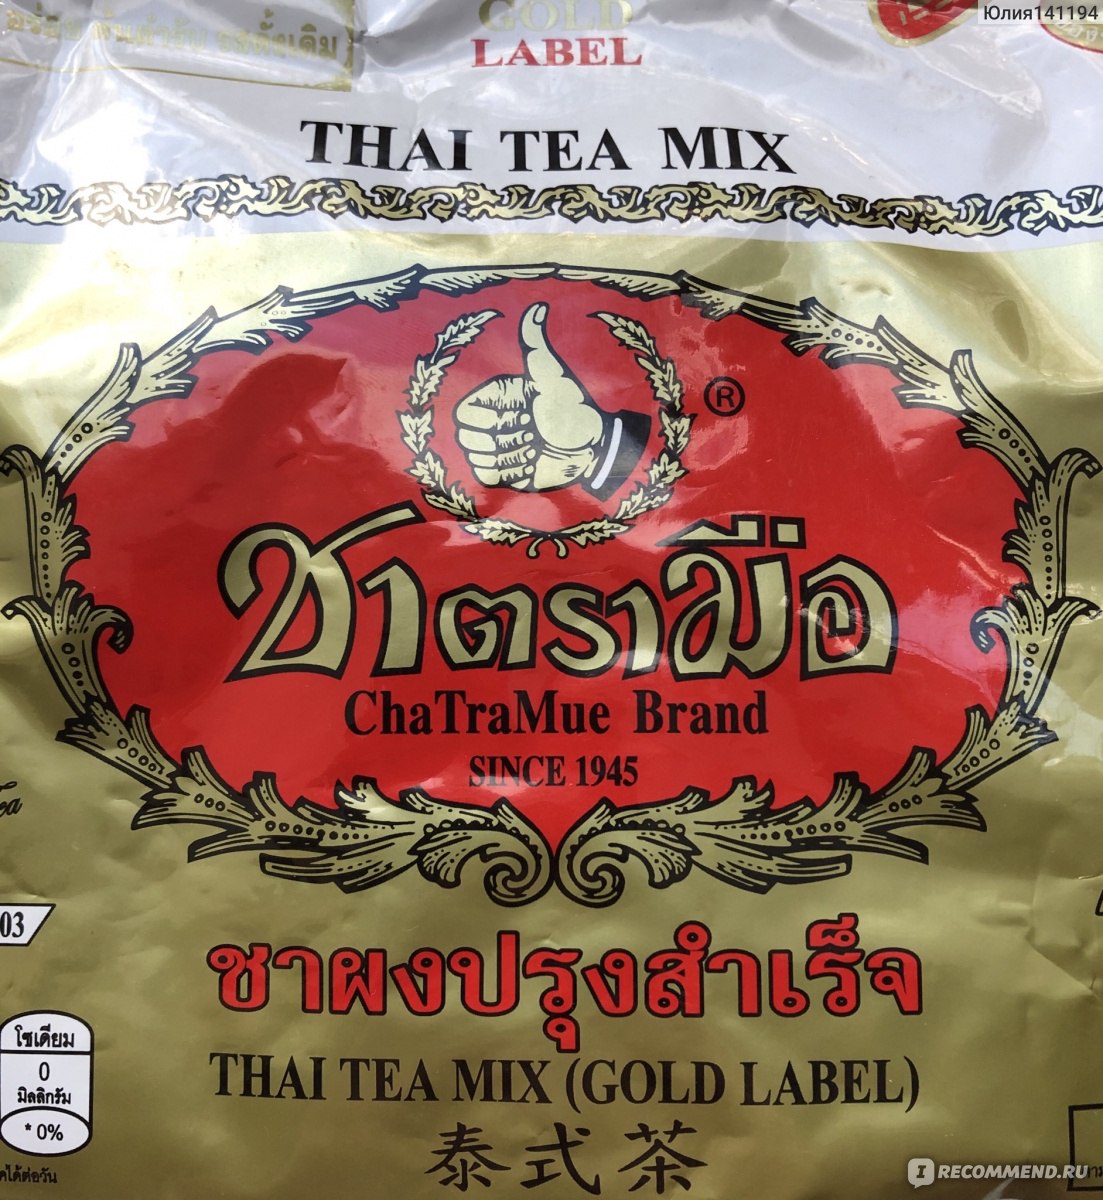 Extra gold. Тайский золотой чай. Тайский золотой чай 400 гр.. Тайский чай Экстра Голд (Thai Tea Extra Gold). Тайский золотой чай Extra Gold Thai Tea Mix ( Таиланд ).